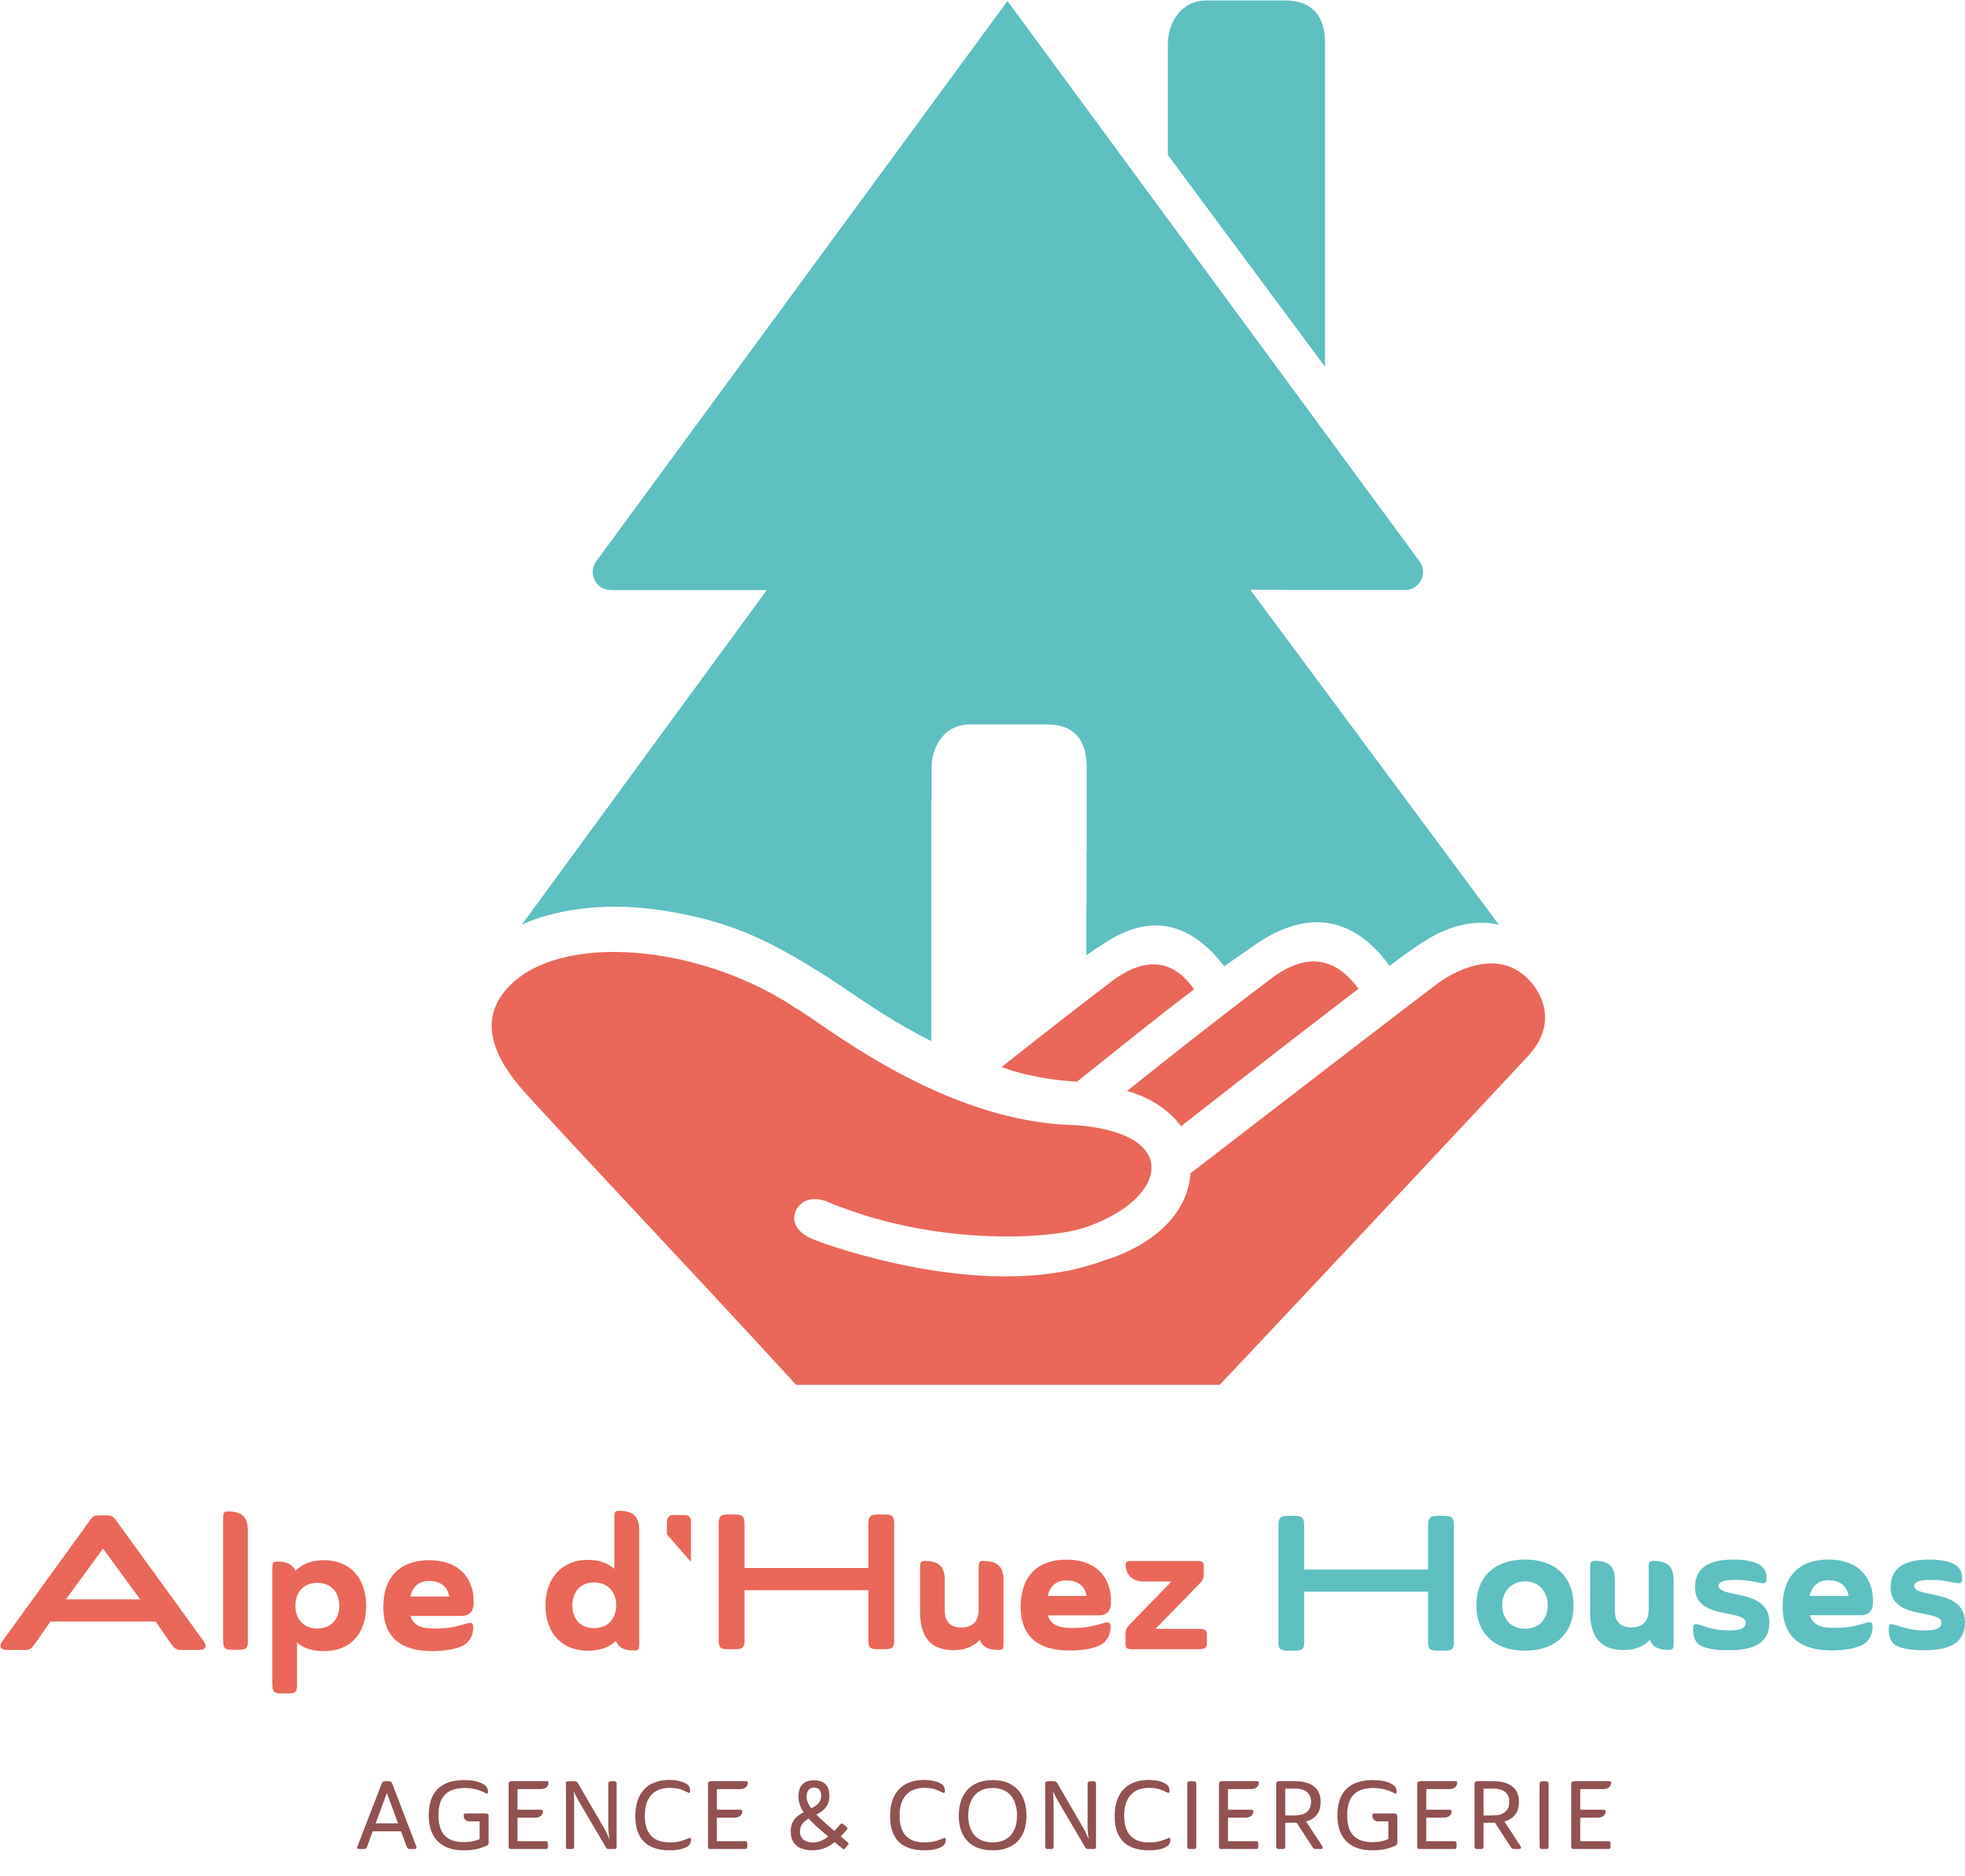 Alpe d'Huez Houses